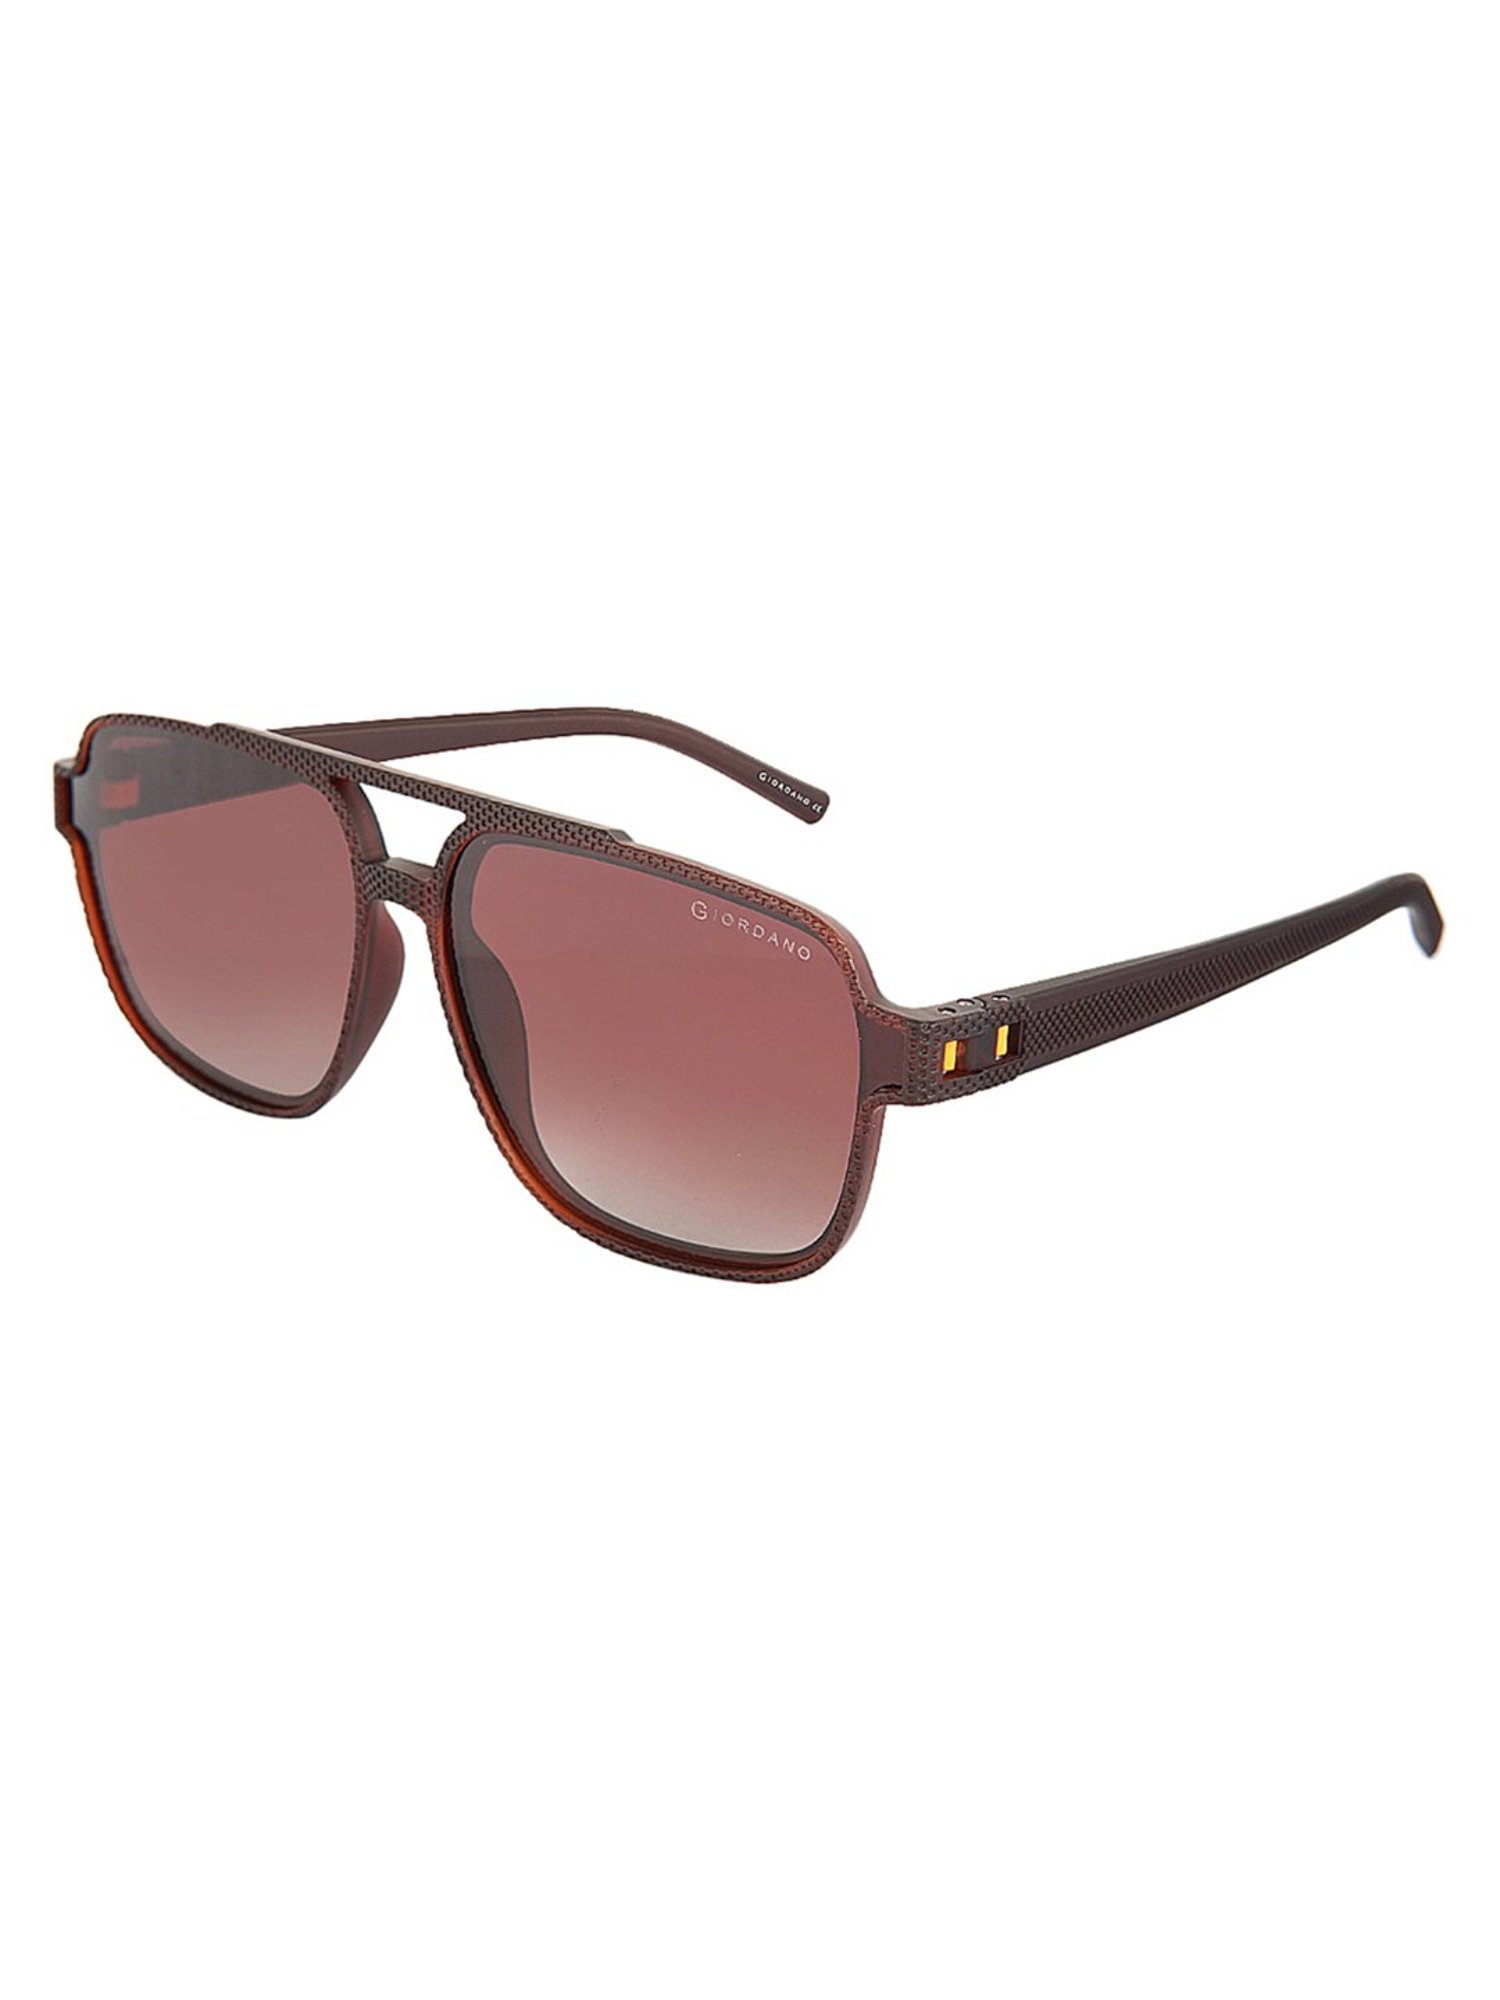 Giordano Grey Square Sunglasses for Women